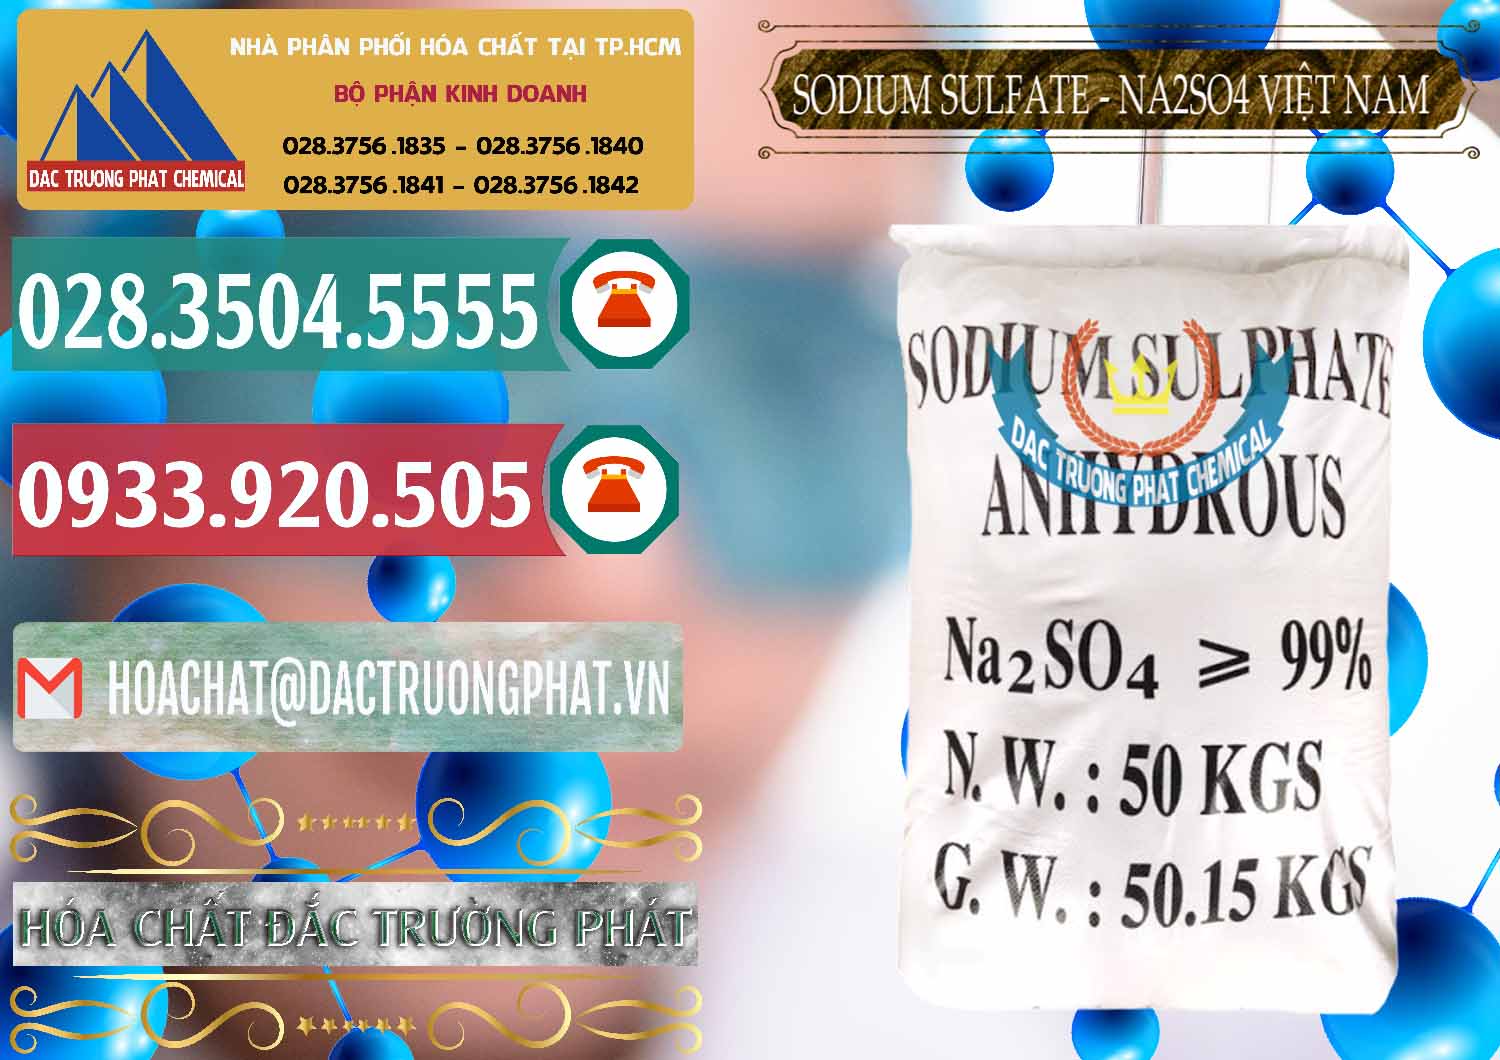 Công ty chuyên cung cấp & bán Sodium Sulphate - Muối Sunfat Na2SO4 Việt Nam - 0355 - Nhà cung cấp _ bán hóa chất tại TP.HCM - muabanhoachat.vn